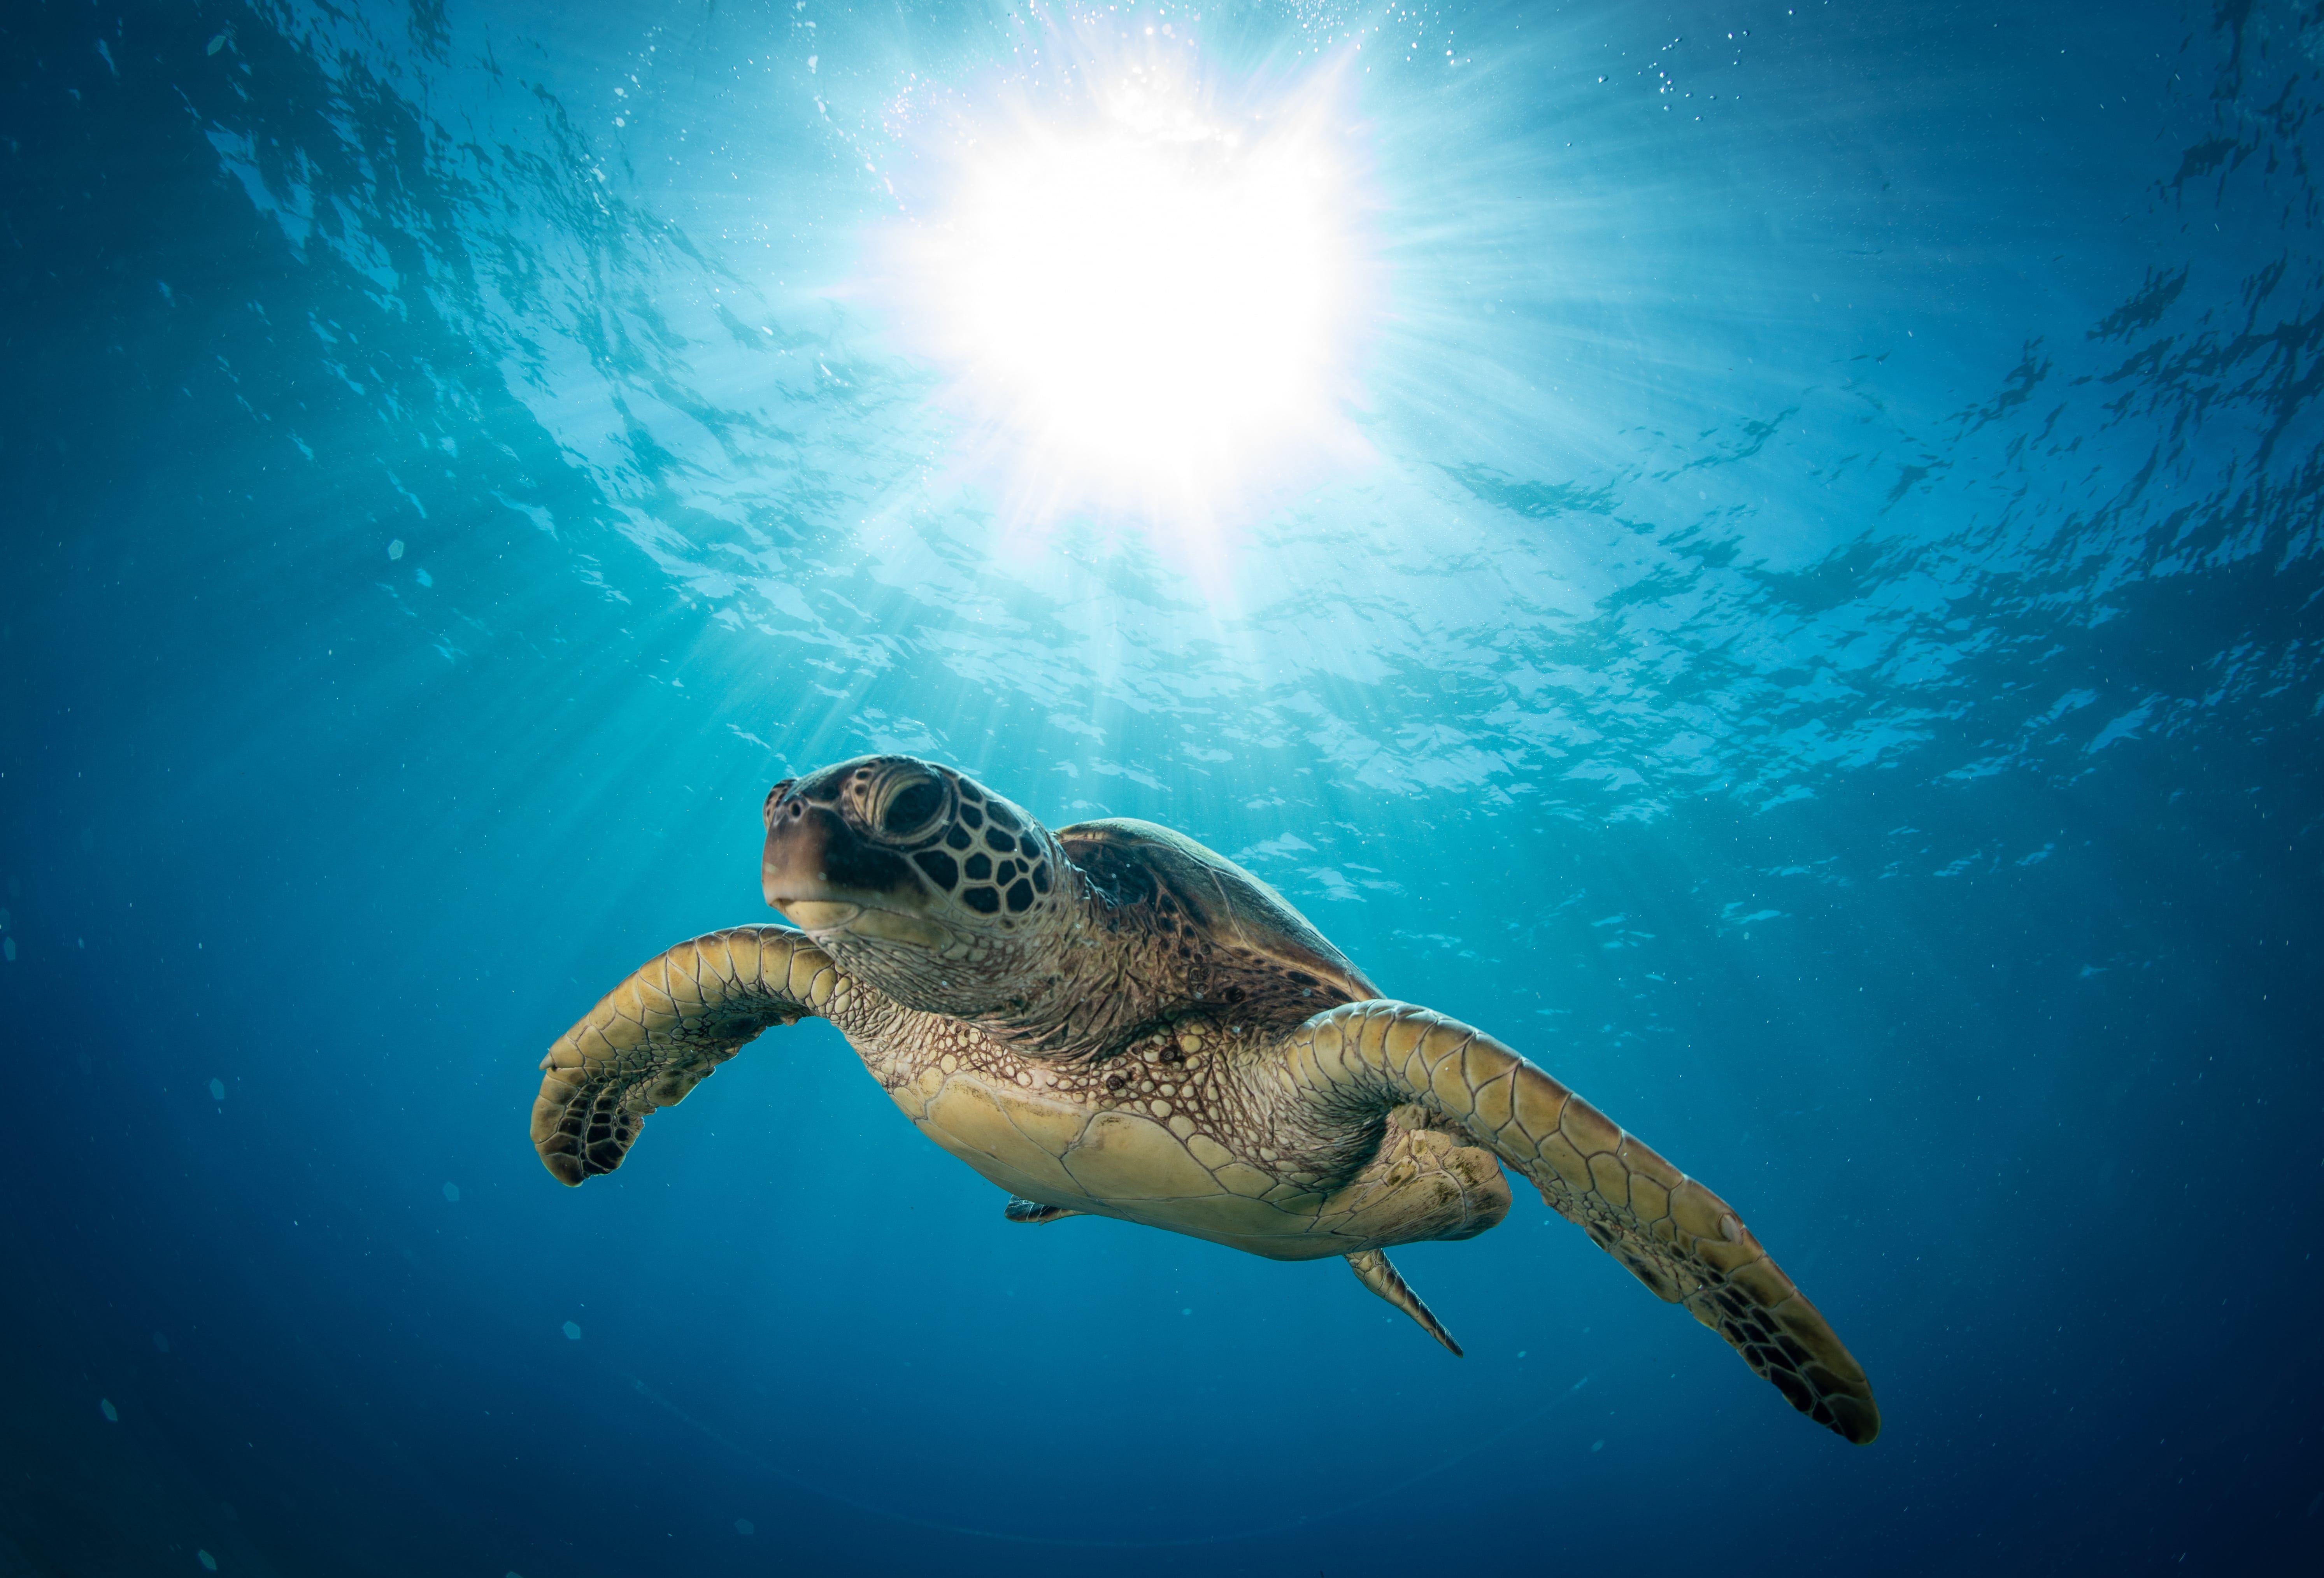 Le mode de vie des tortues de mer les rendrait plus vulnérables à la pollution plastique. © Drew, Adobe Stock